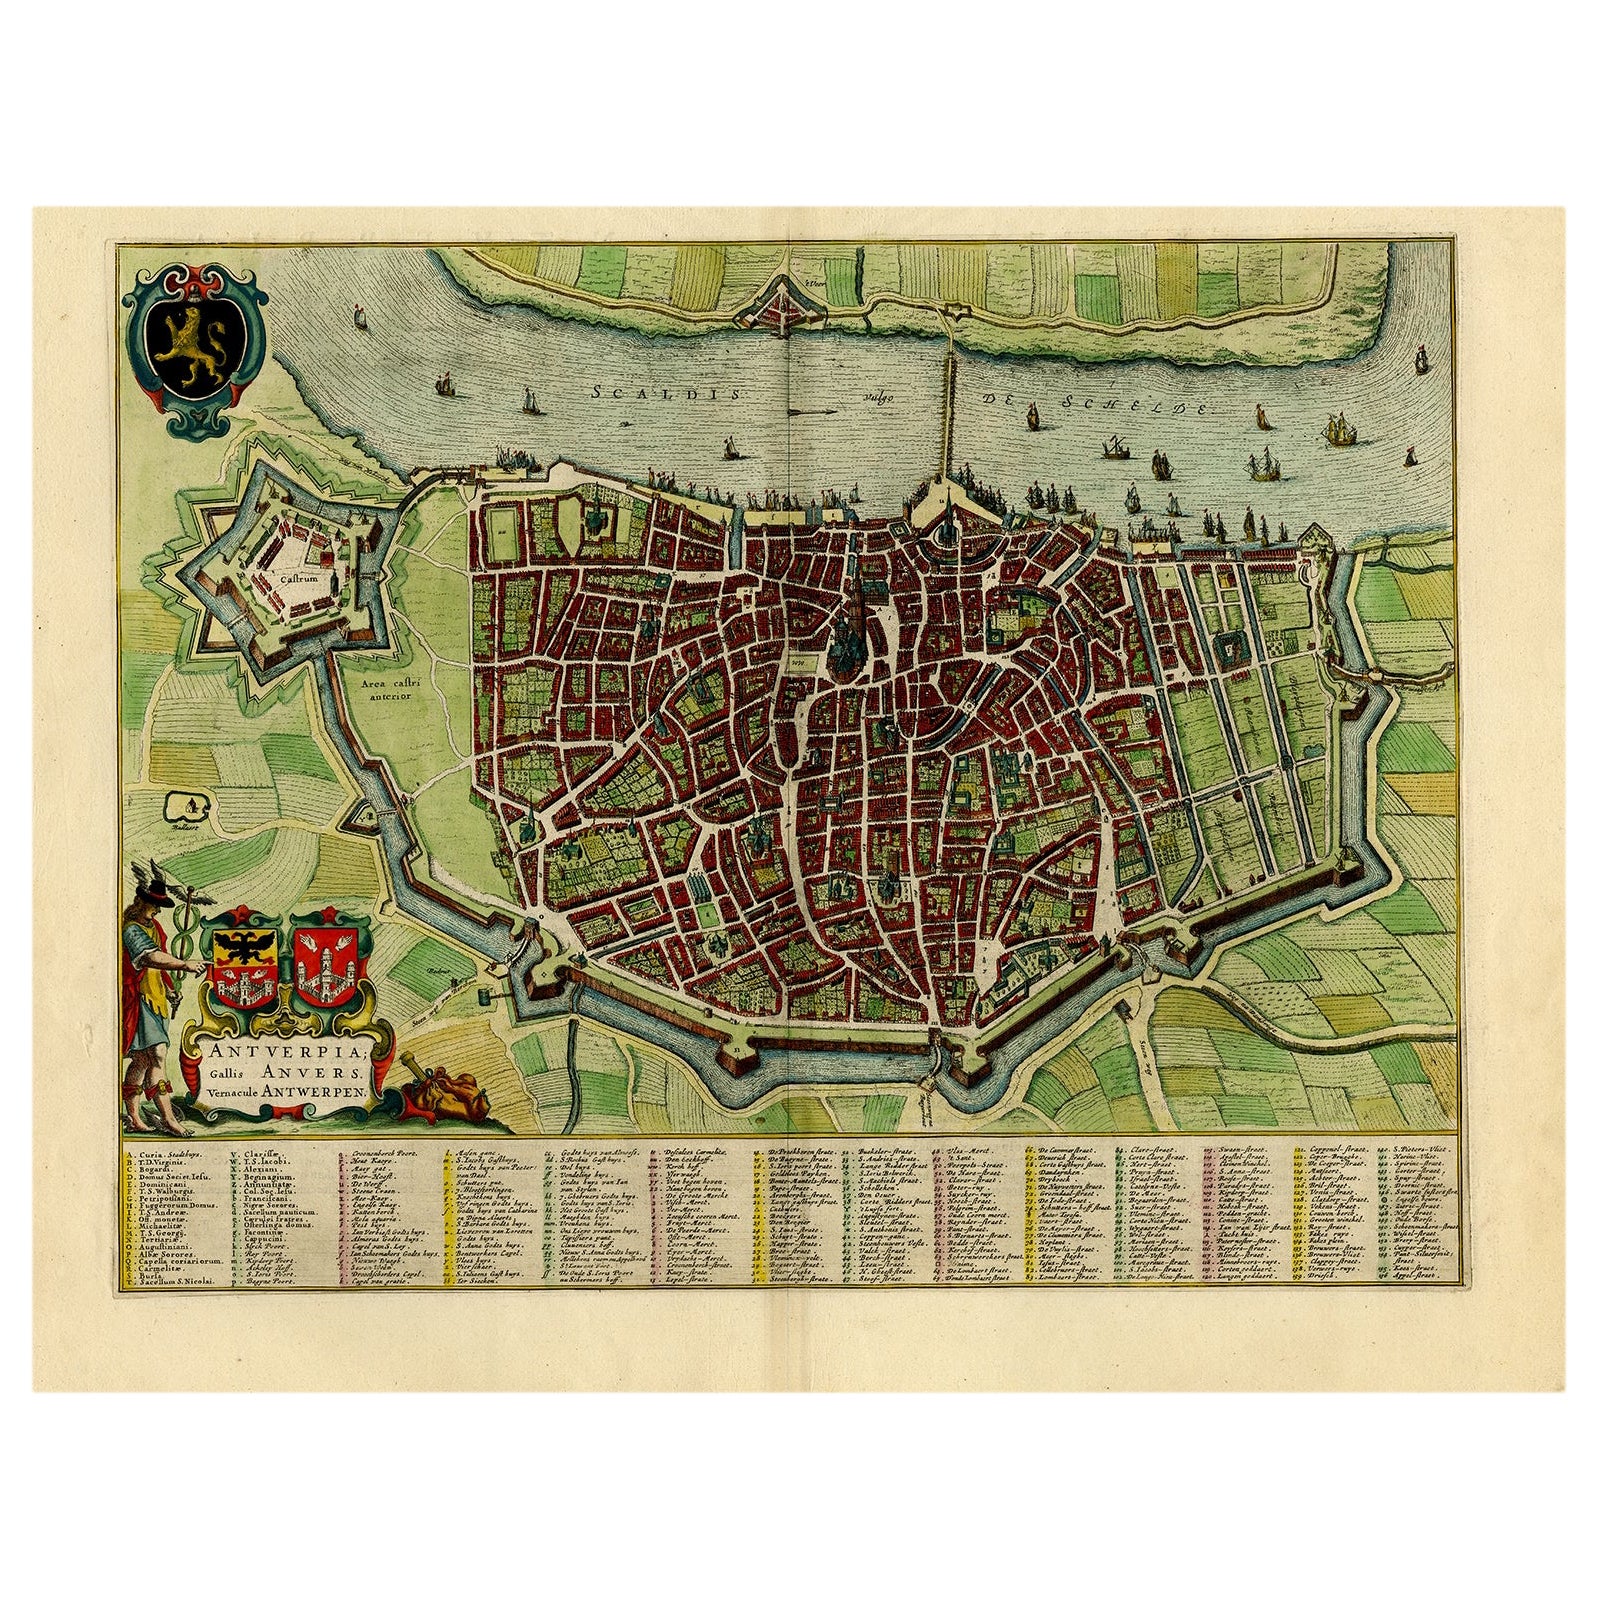 Magnifique carte ancienne d'Anvers, Belgique par l'ébéniste Blaeu, vers 1652